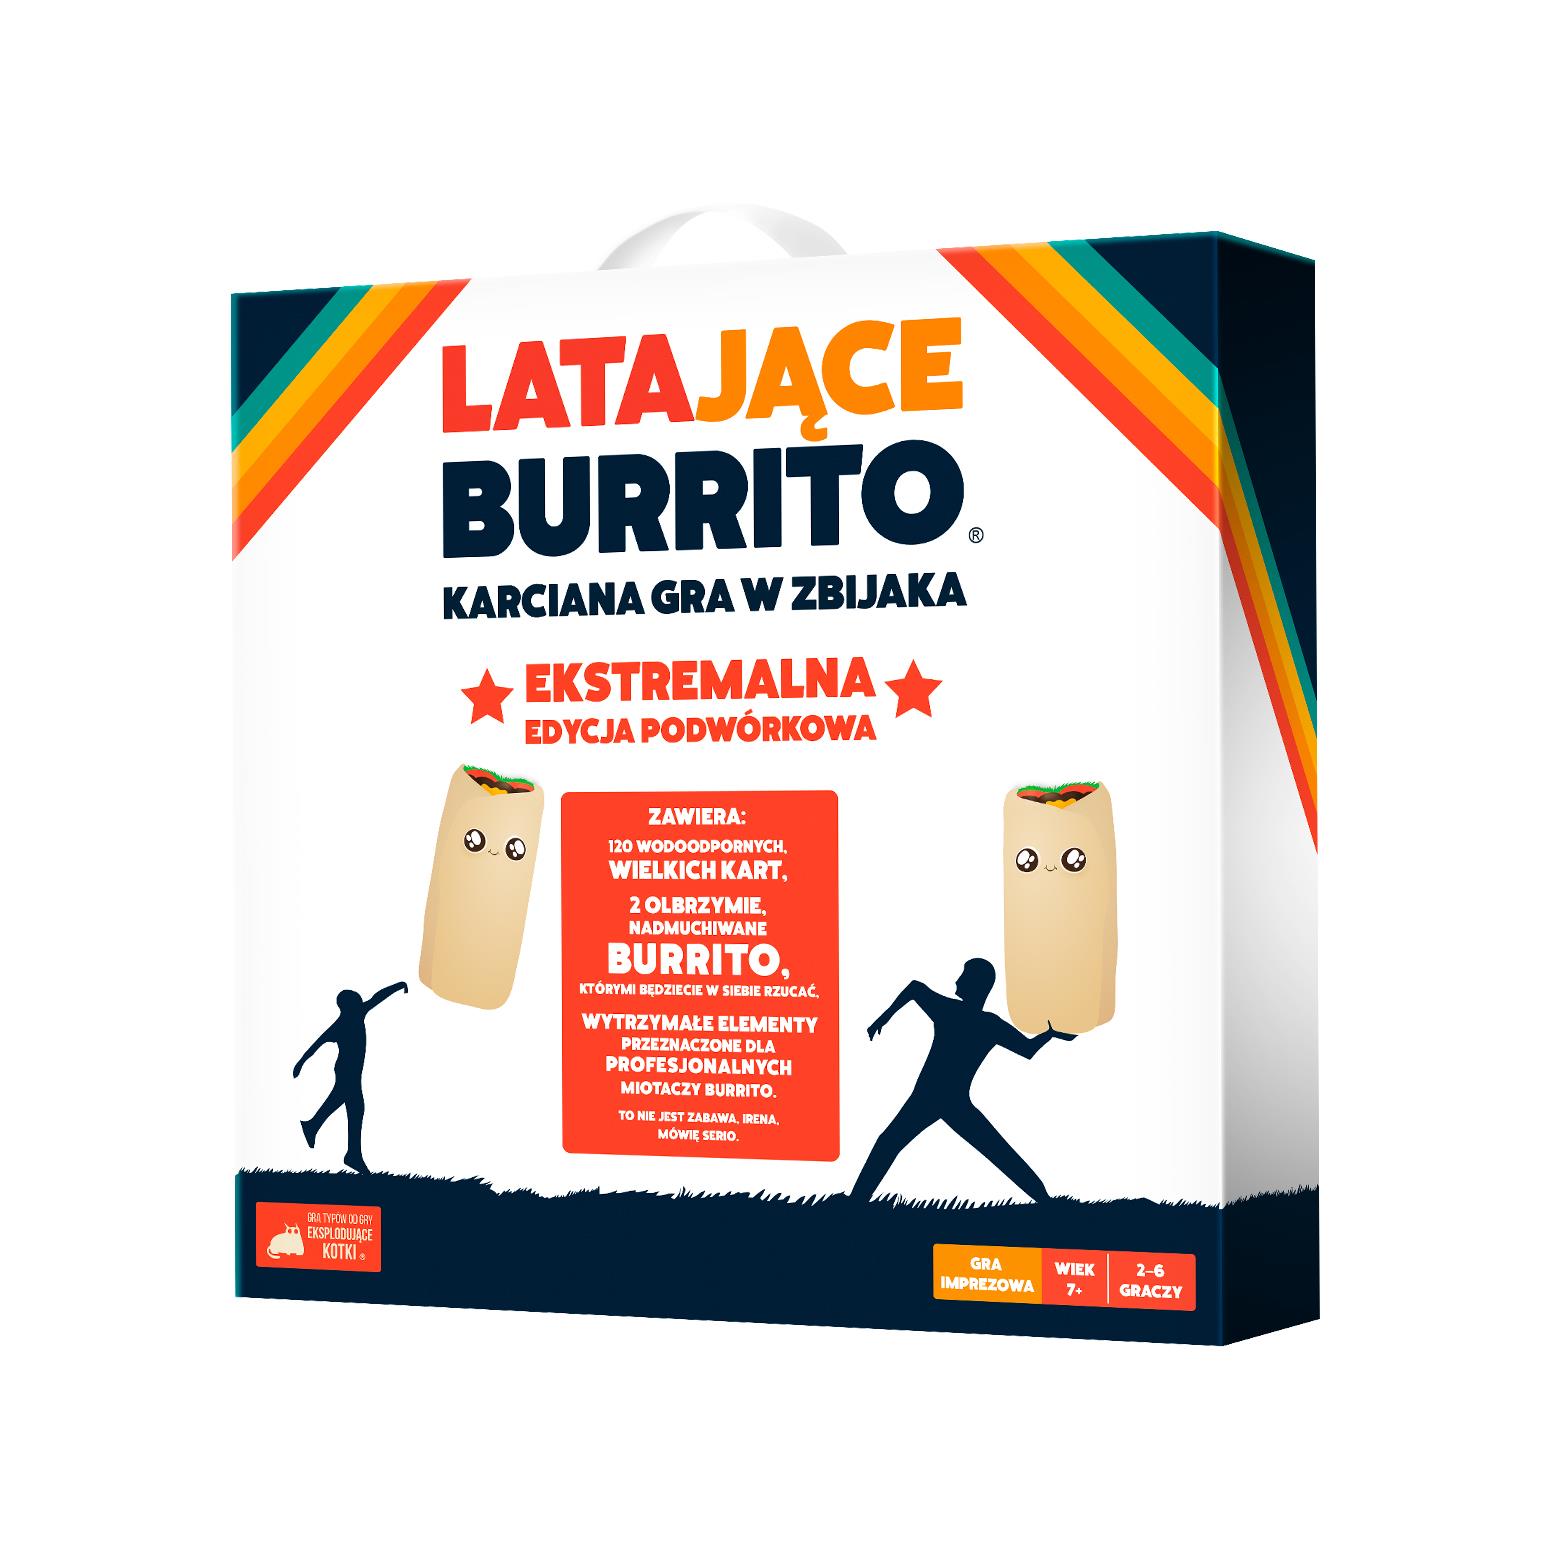 Latające Burrito: Ekstremalna edycja podwórkowa